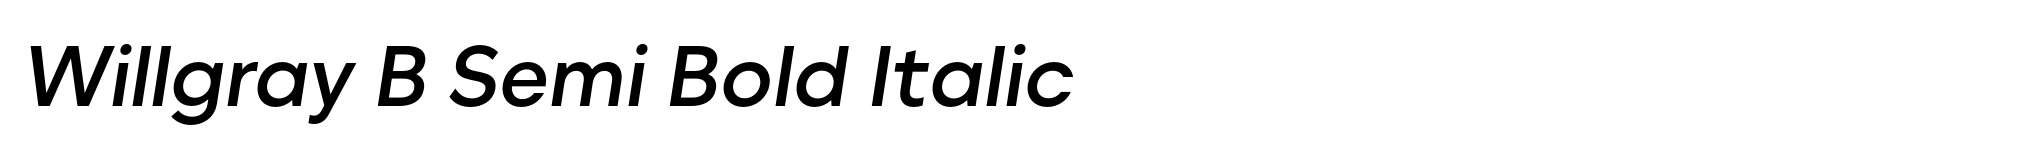 Willgray B Semi Bold Italic image